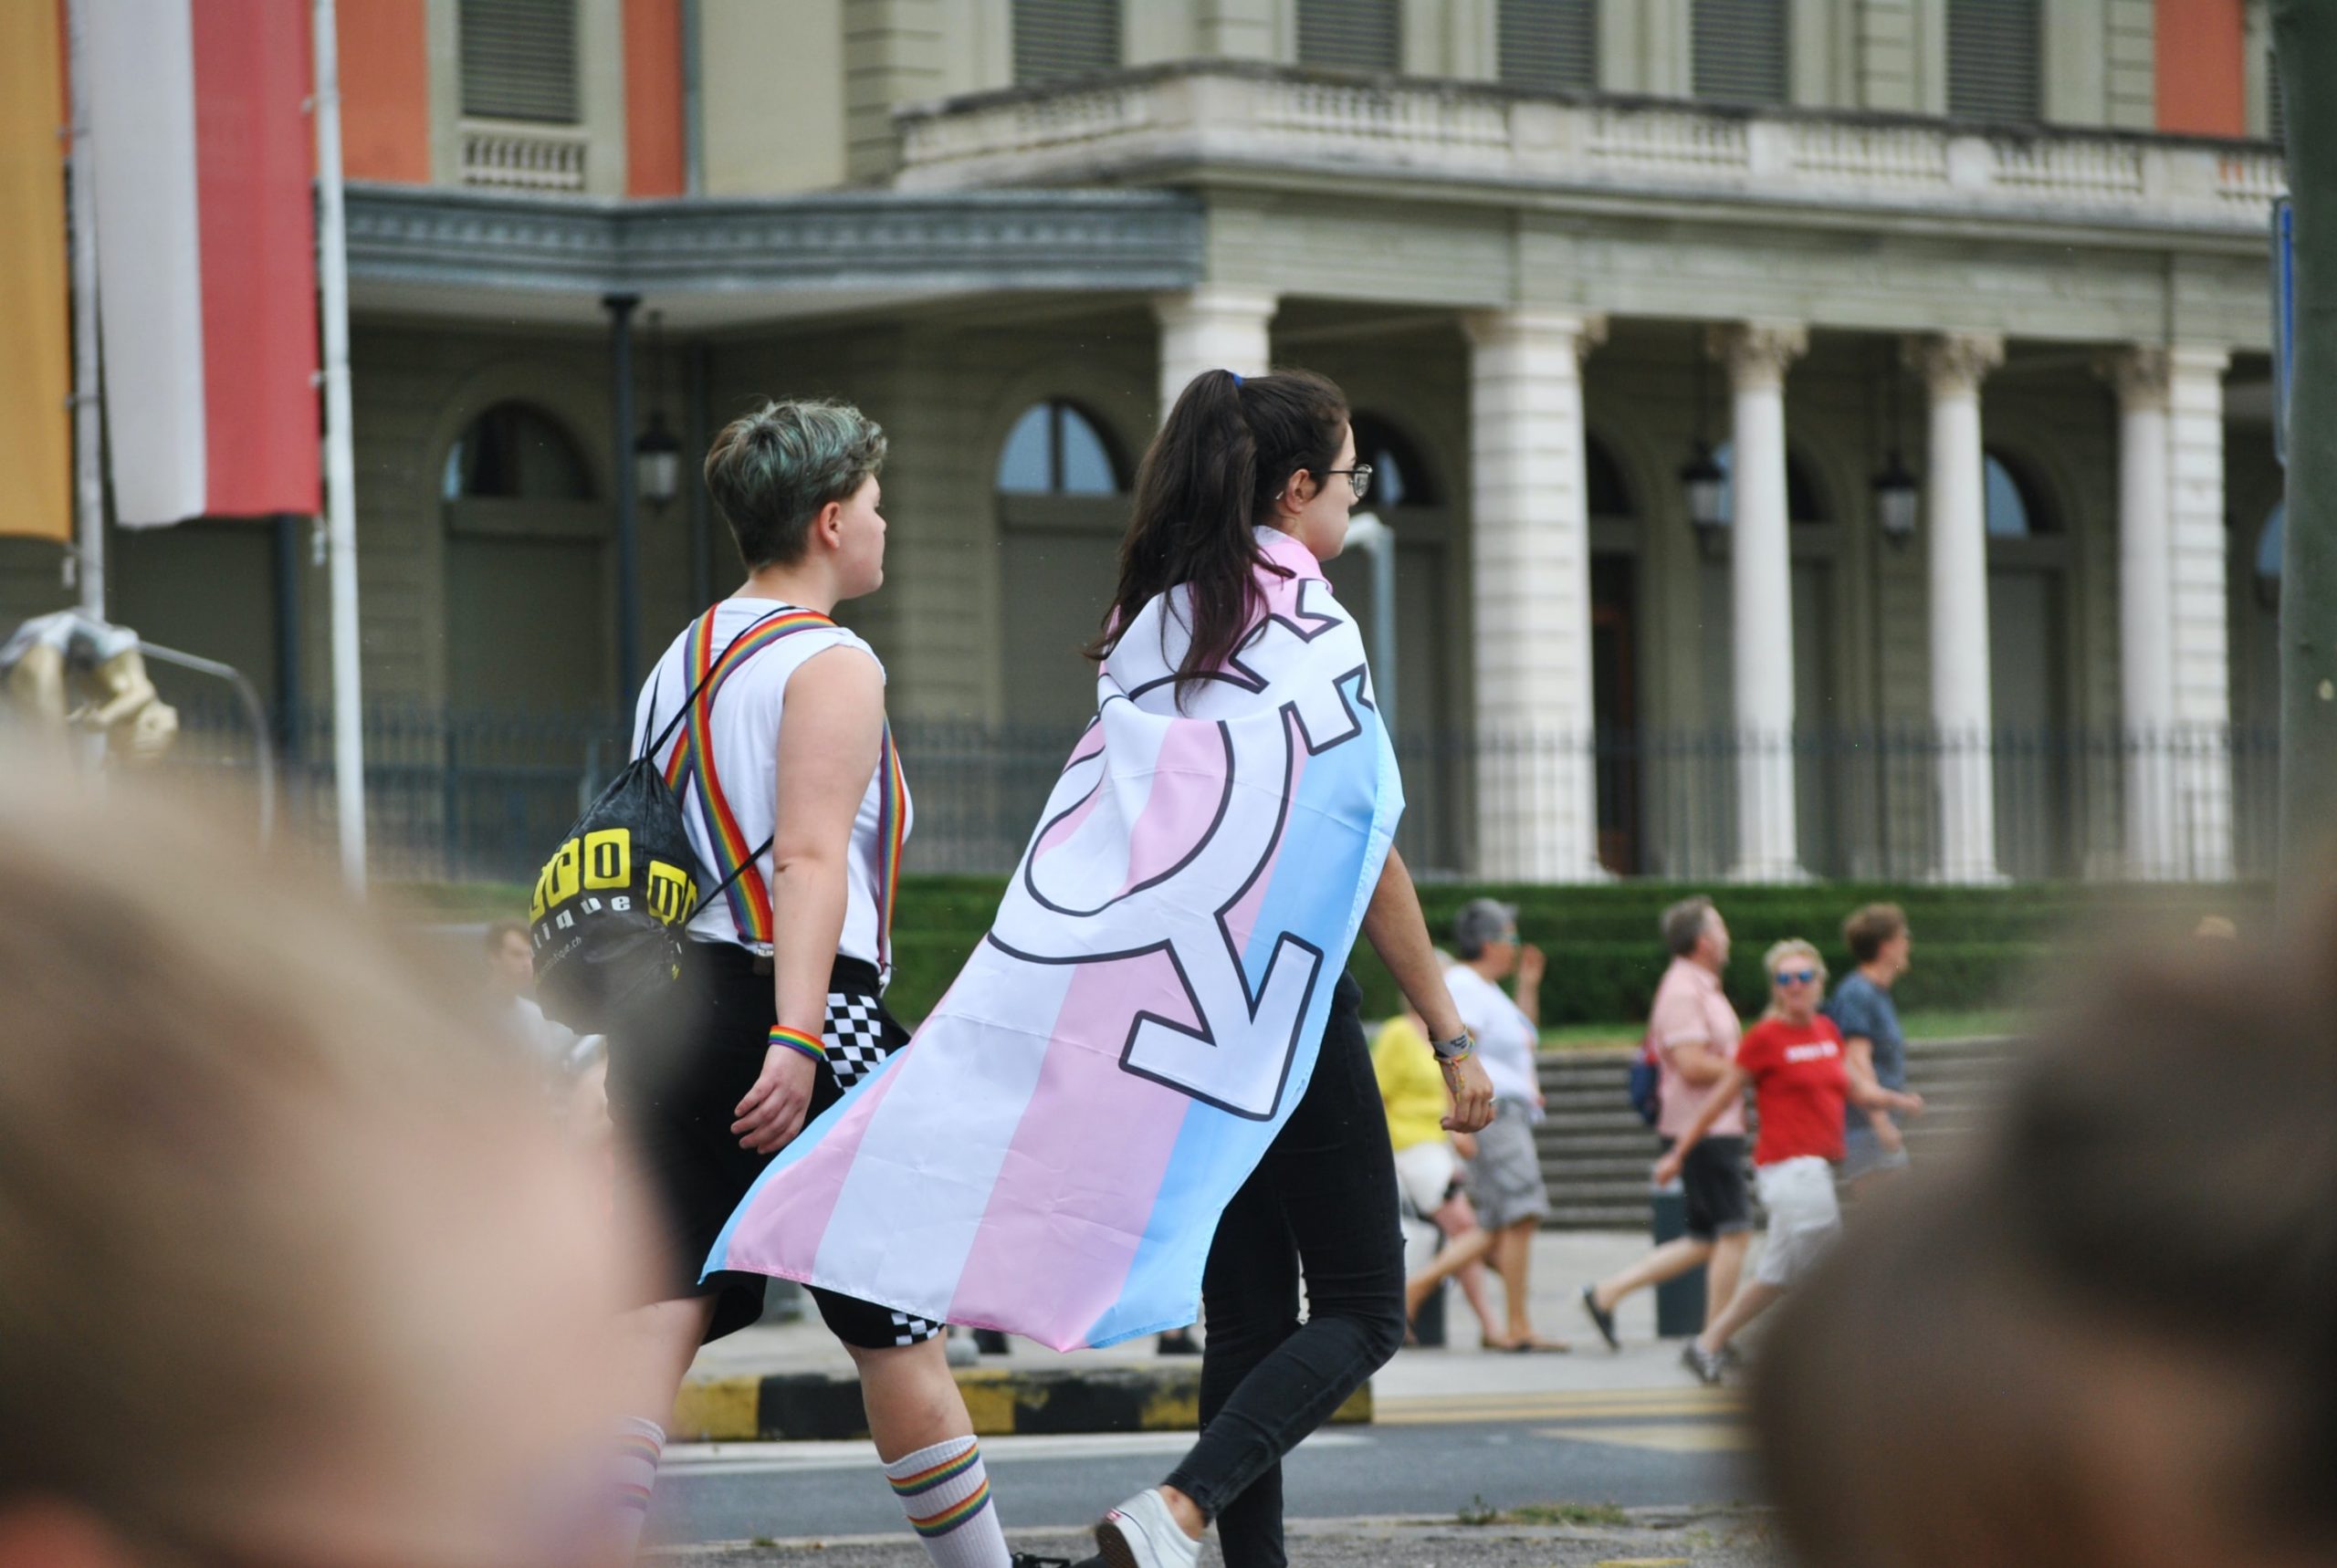 Mulheres trans são dos grupos mais discriminados no acesso ao emprego, alerta investigadora Sandra Saleiro